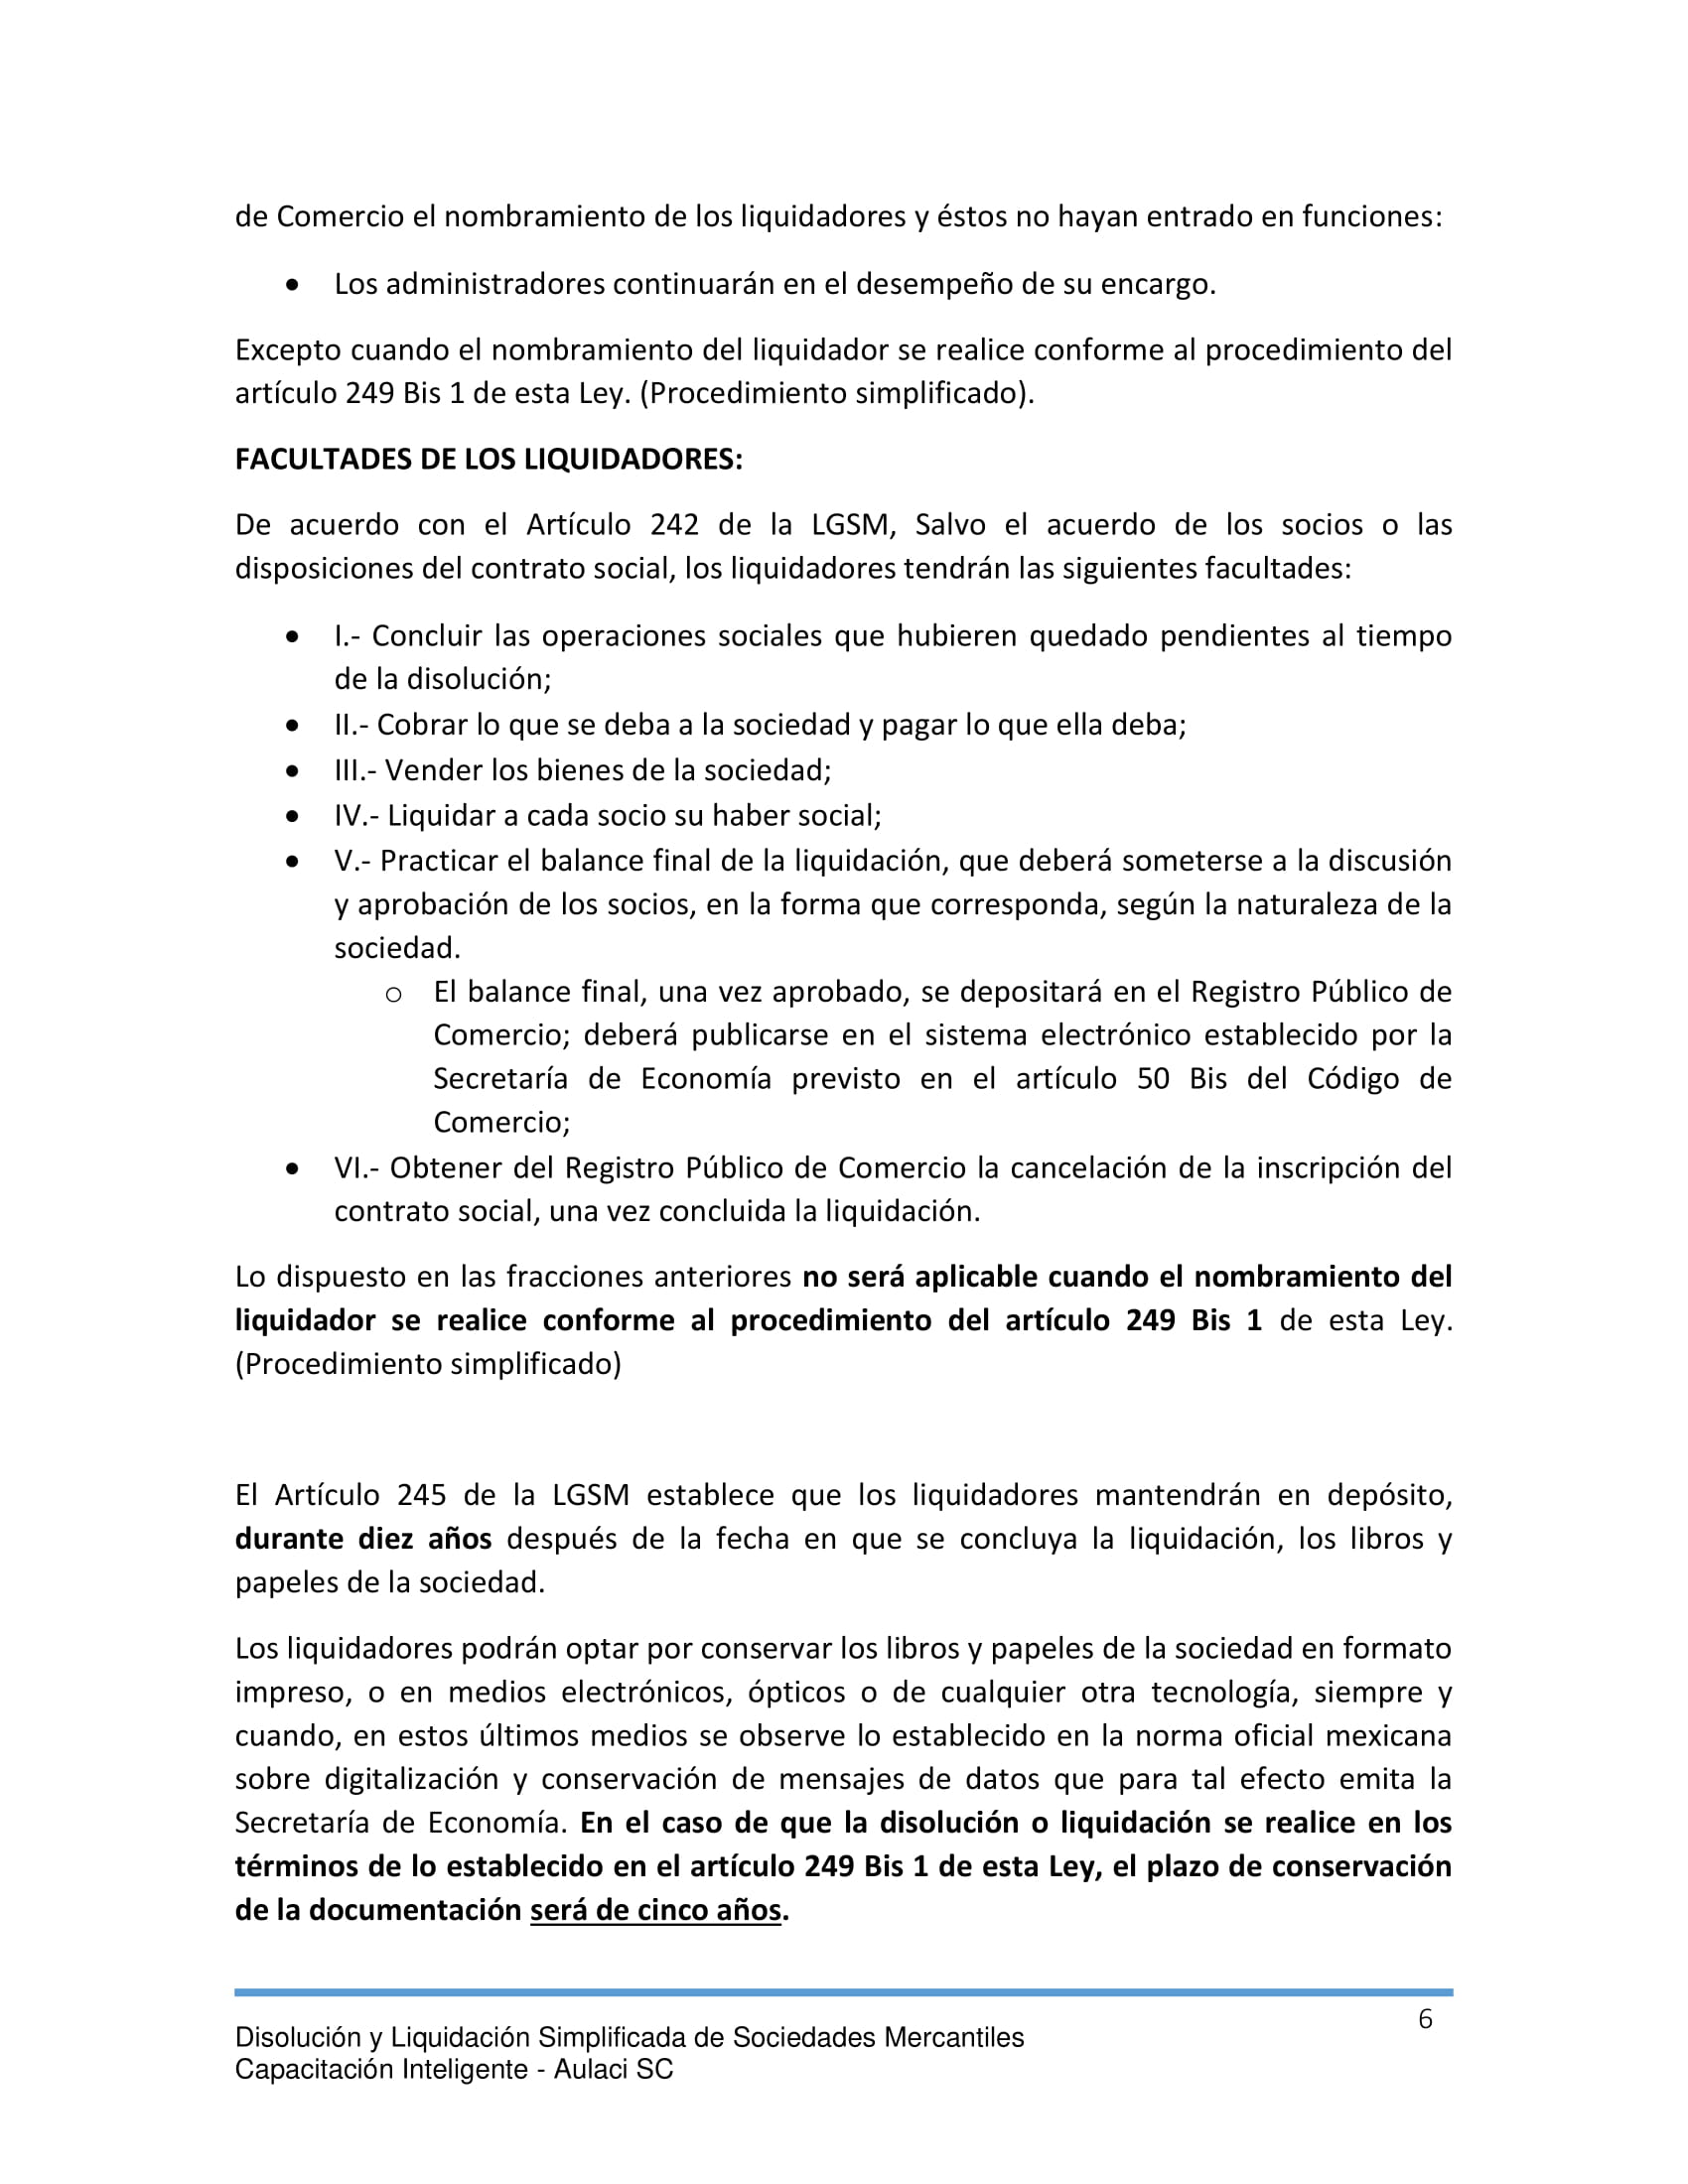 Libro_Consulta_Disolucion_Liquidacion_Simplificada_Sociedades_Mercantiles-06